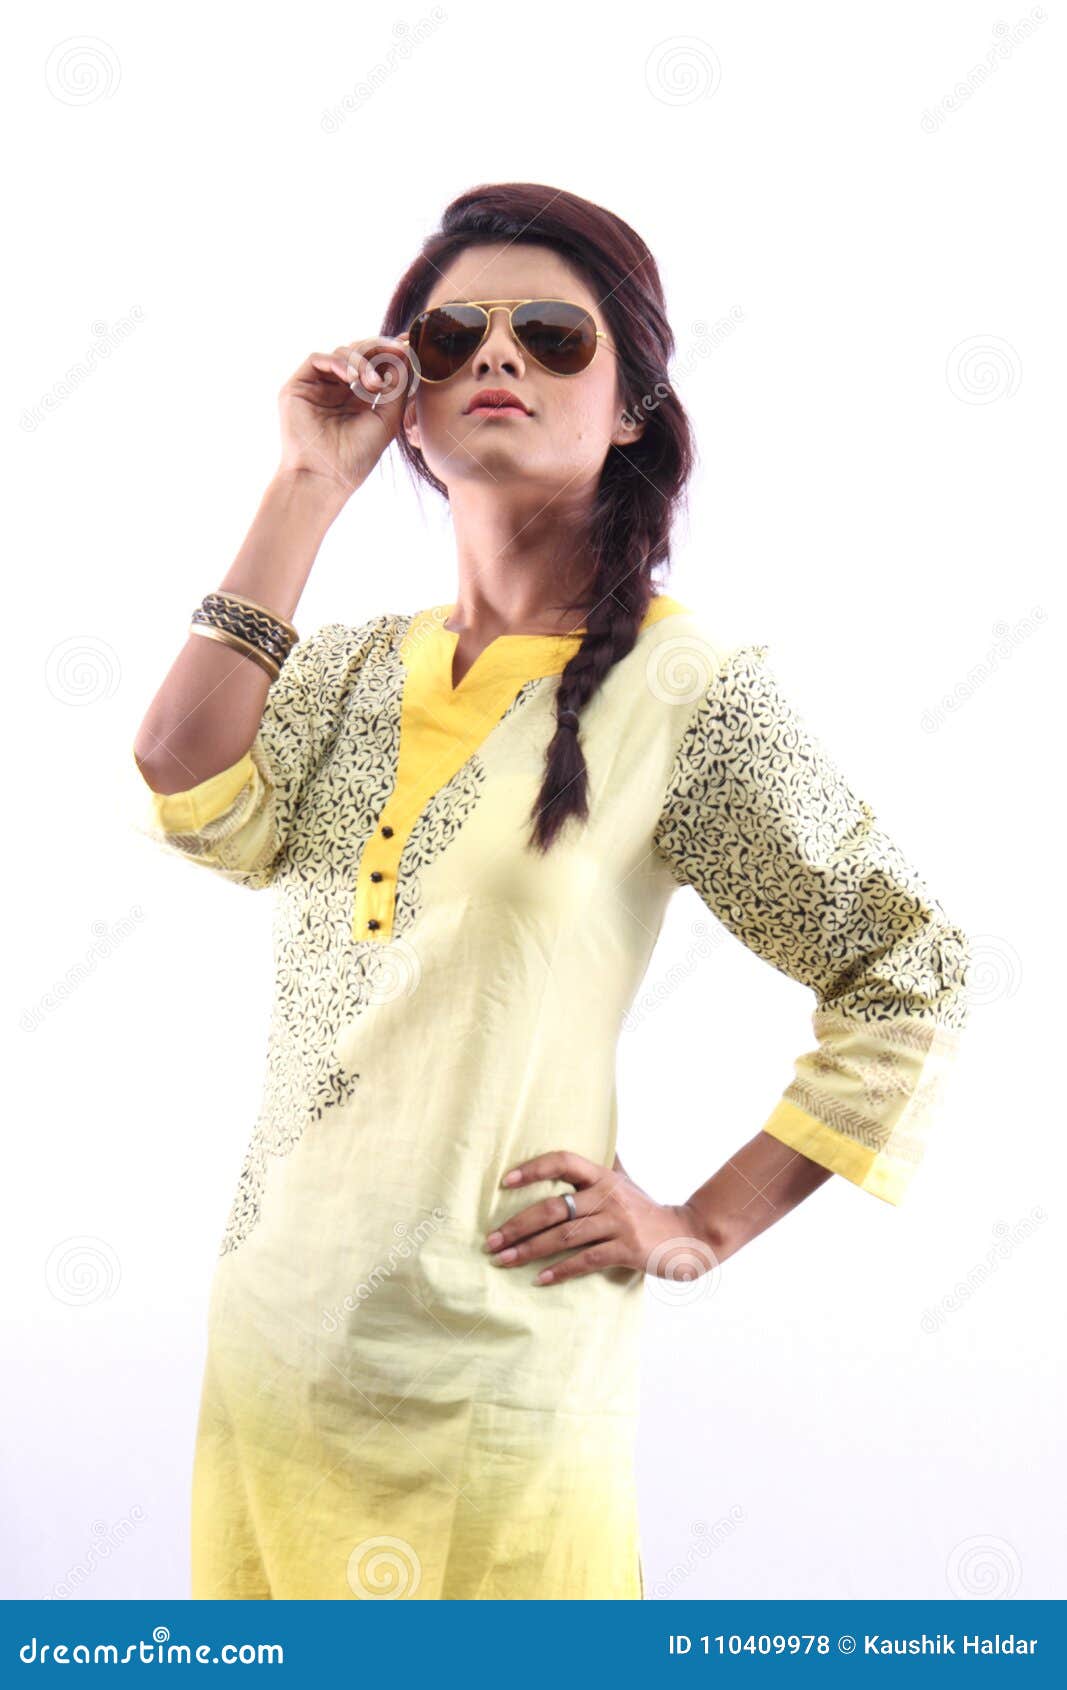 Why do Indian women prefer wearing kurtis?